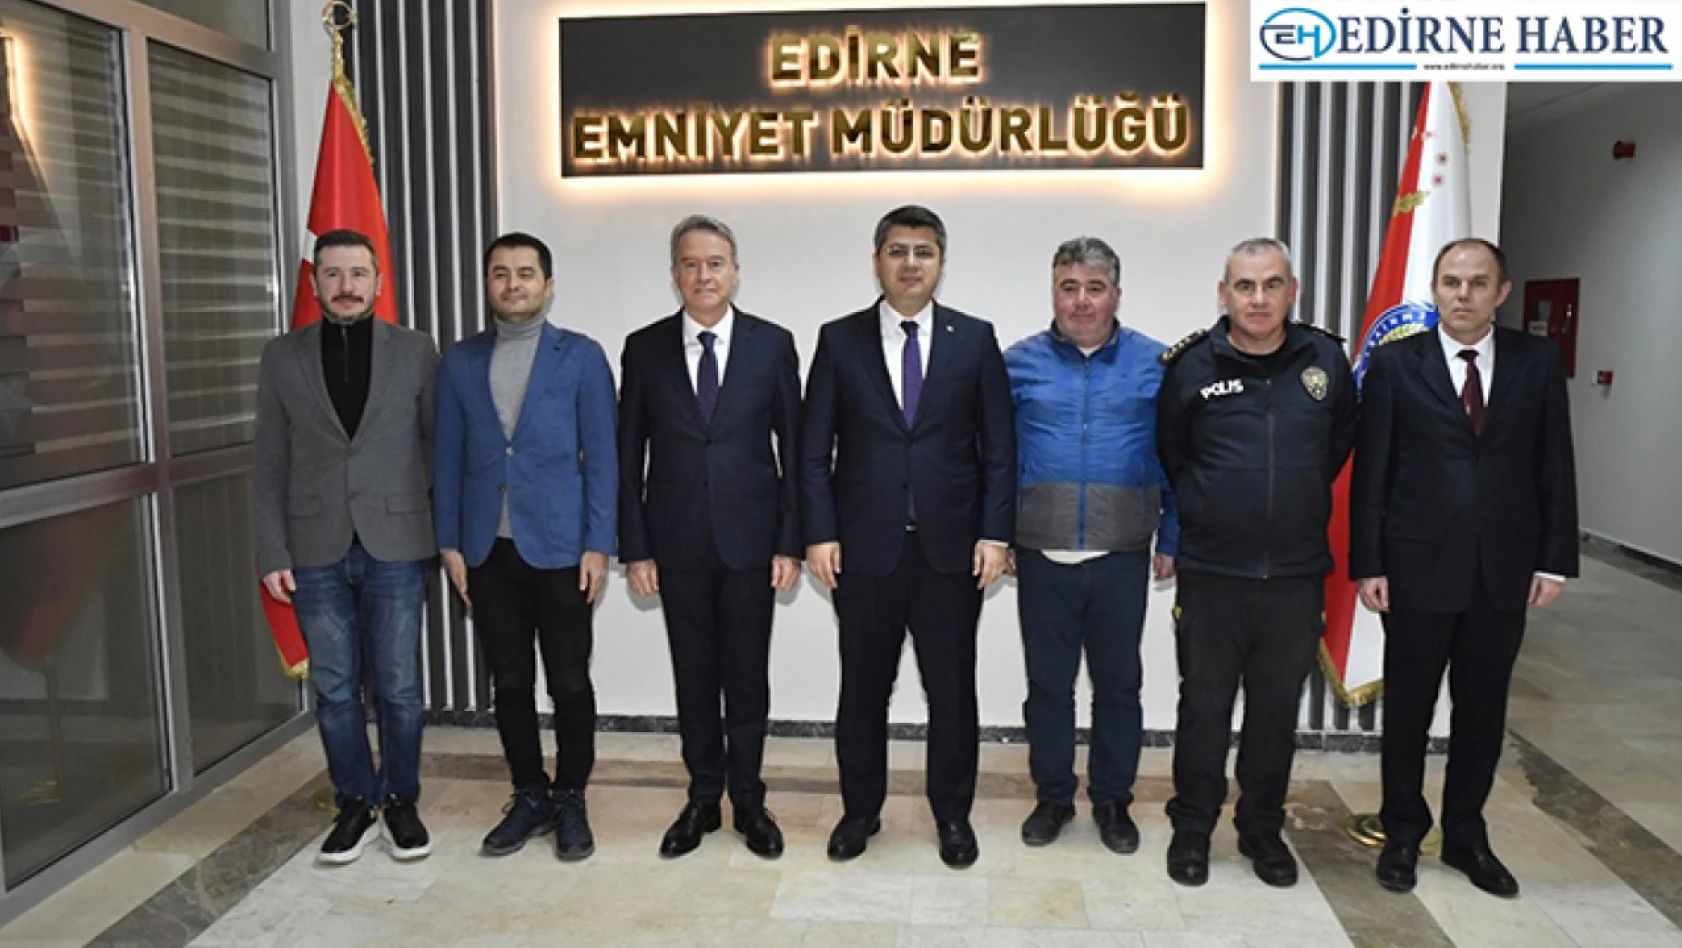 Vali Kırbıyık, başarılı operasyonlardan dolayı Edirne İl Emniyet Müdürlüğünü tebrik etti